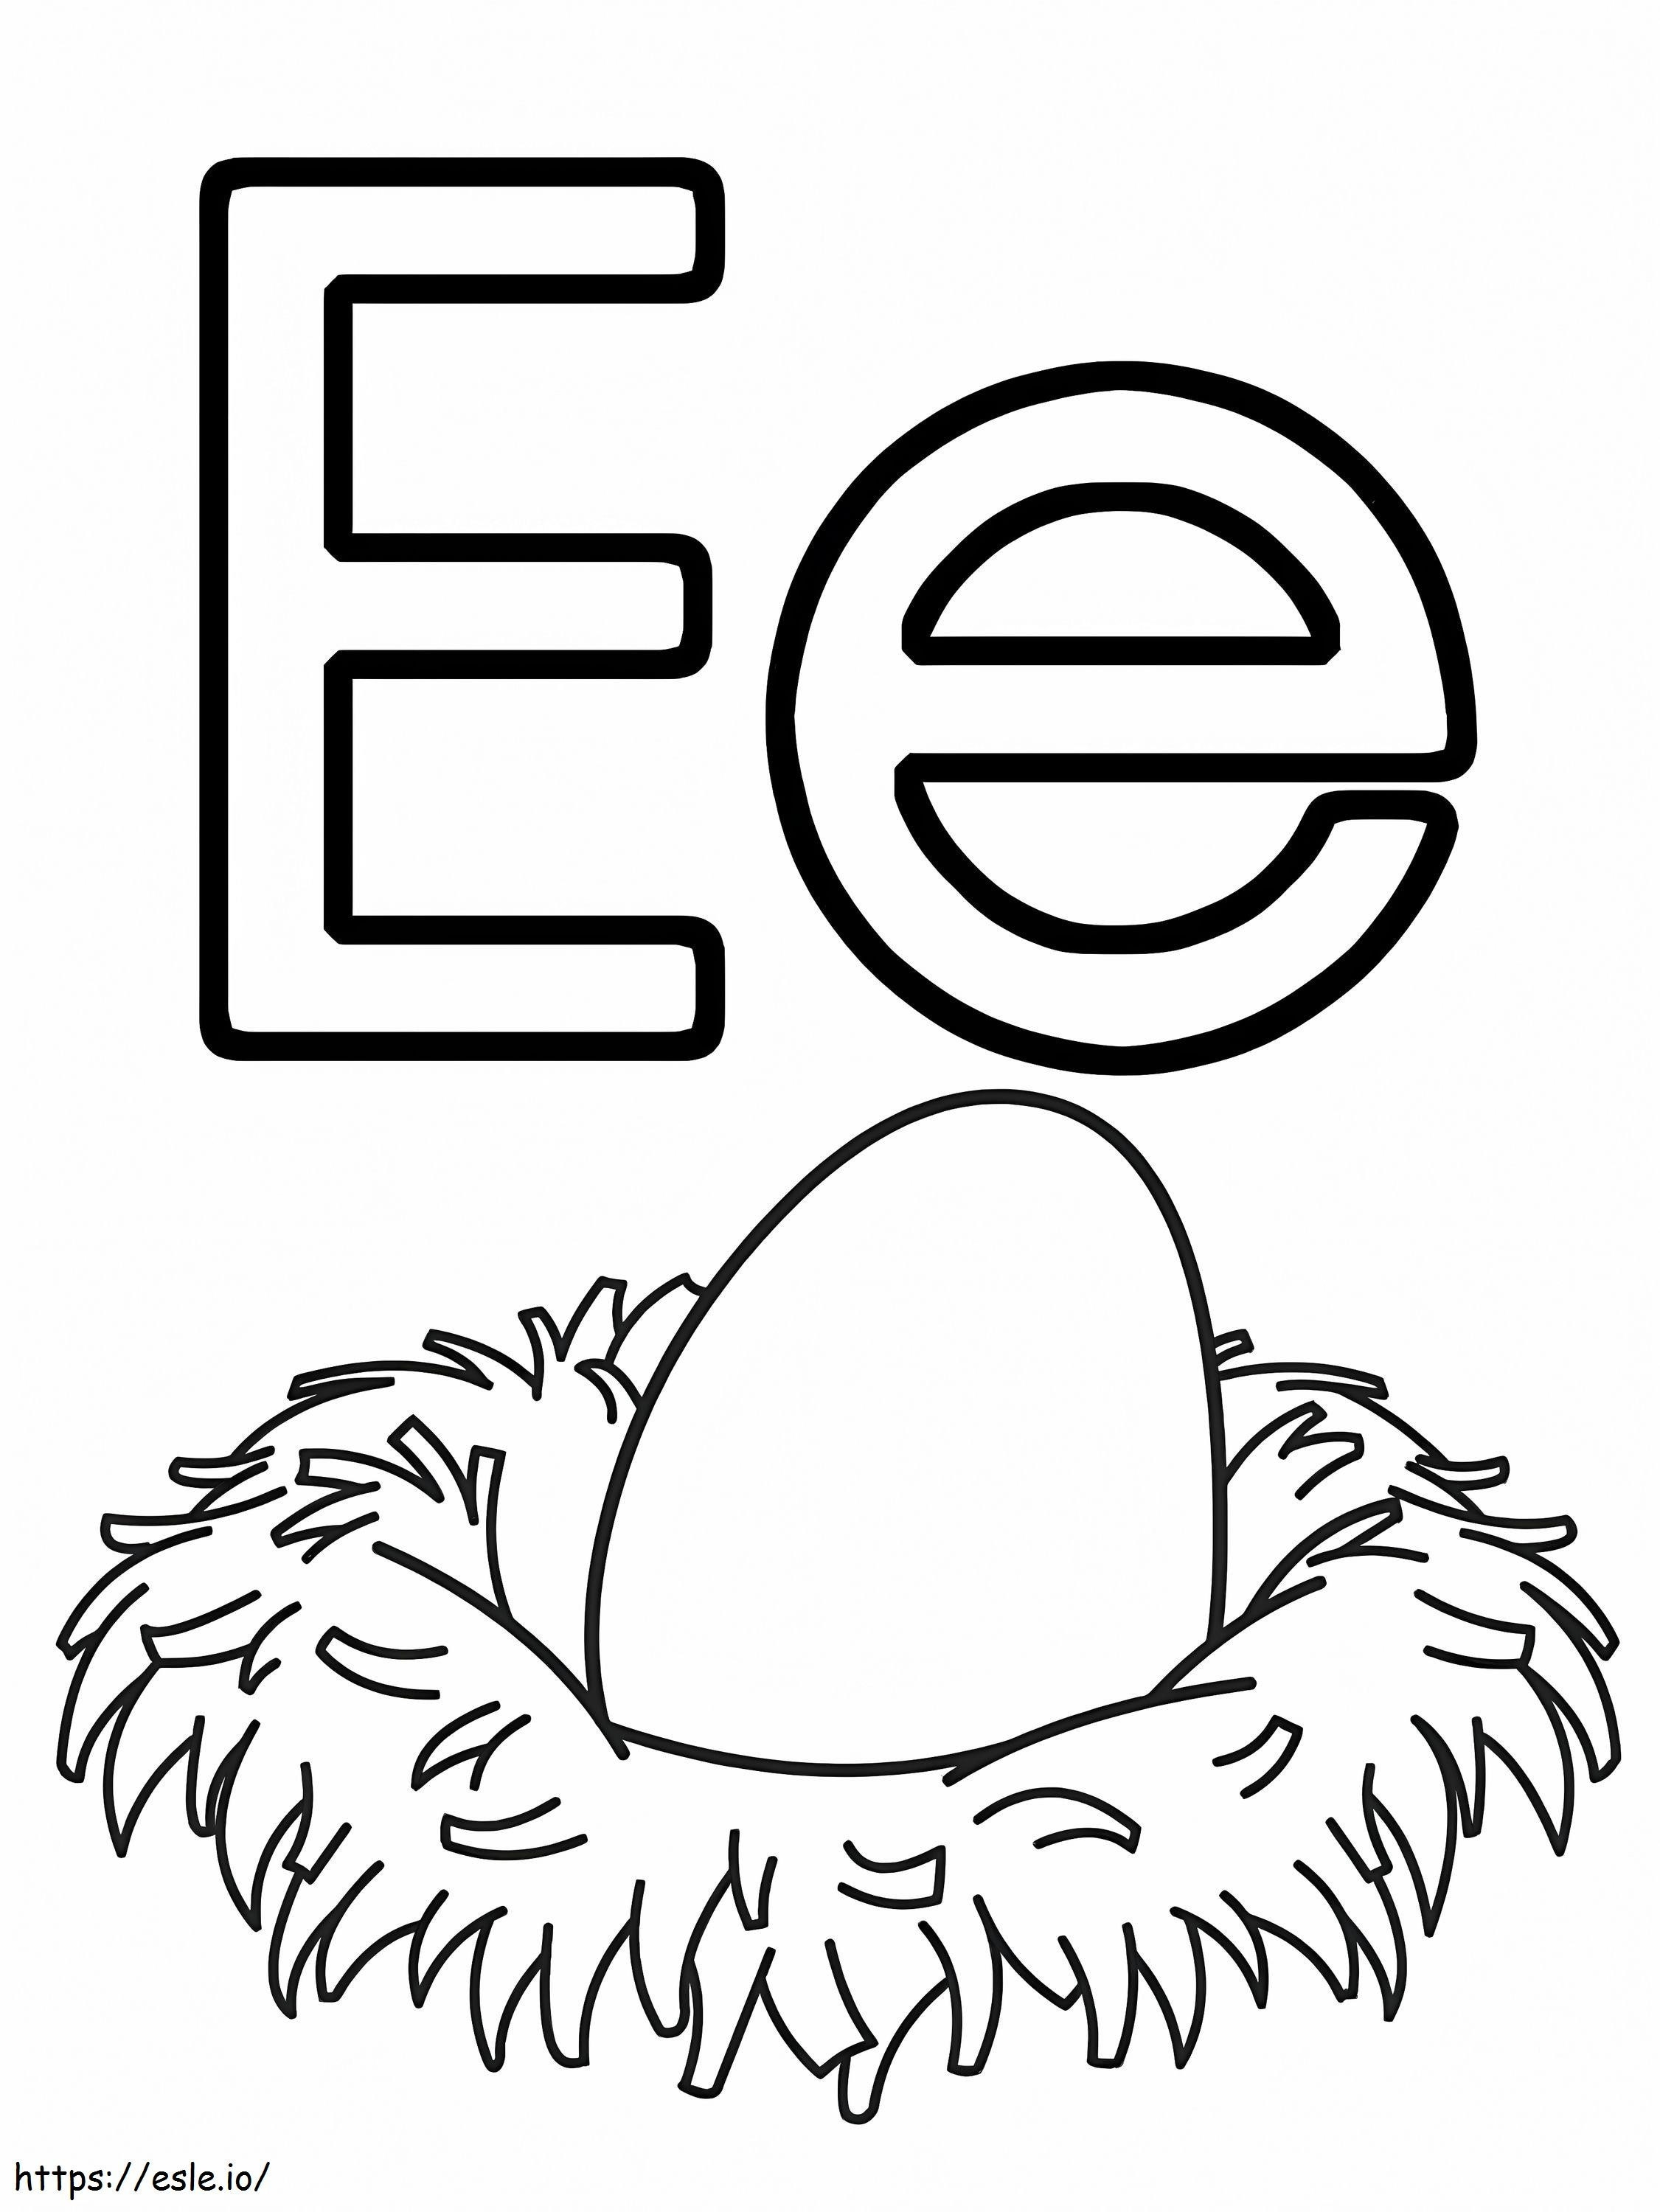 Huevo Letra E para colorear